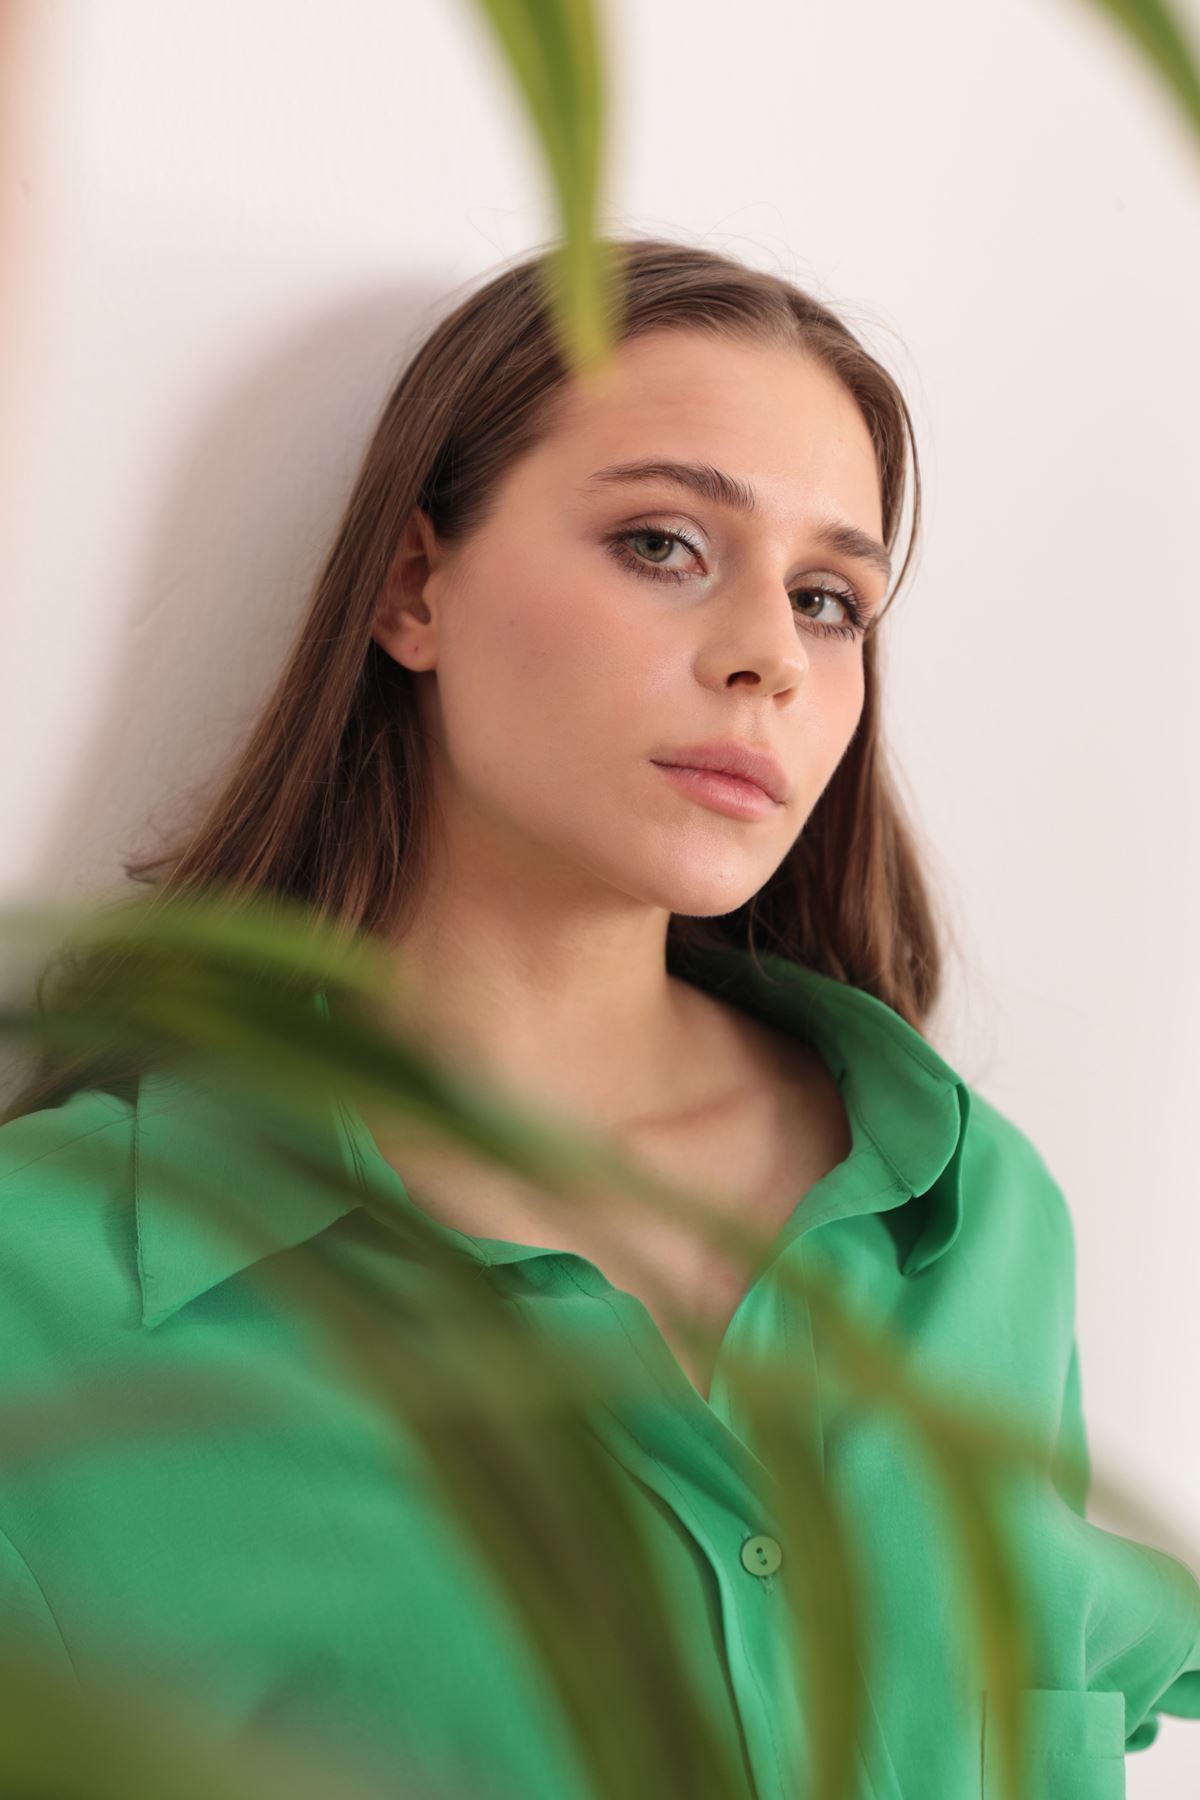 Modal Kumaş Oversize Kadın Gömlek-Yeşil